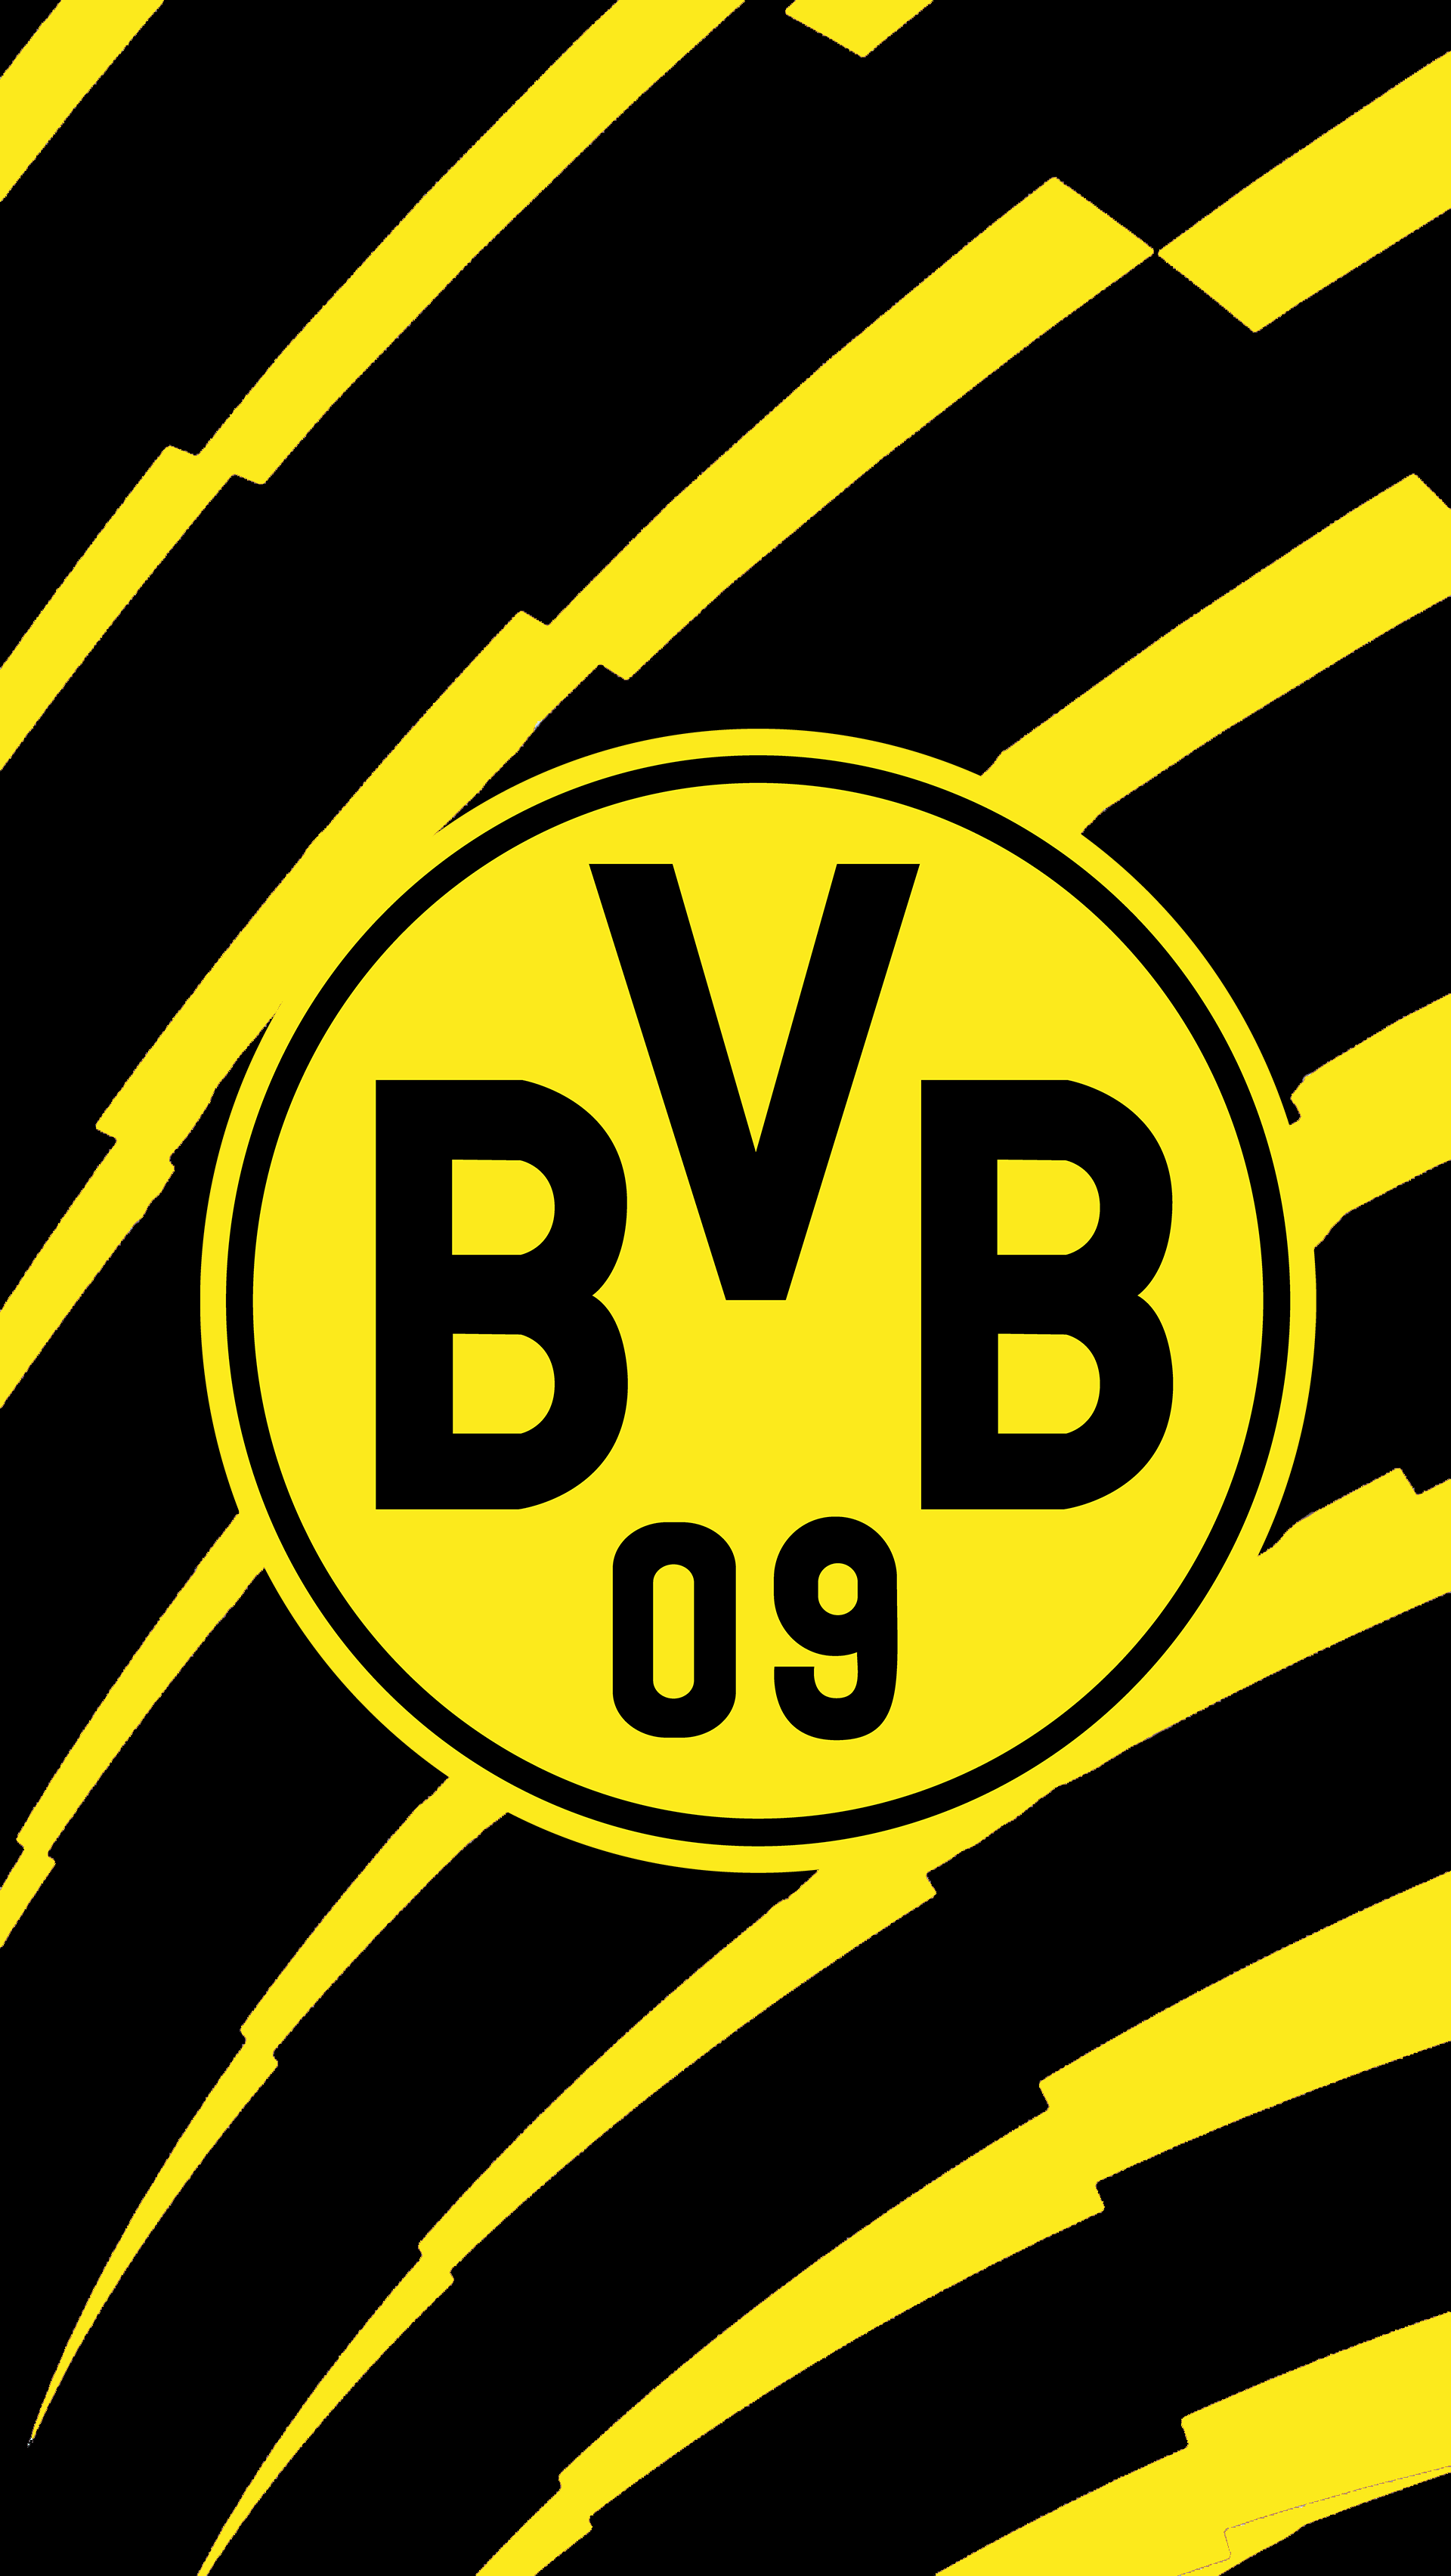 Borussia Dortmund ideas. dortmund, borussia dortmund, football wallpaper